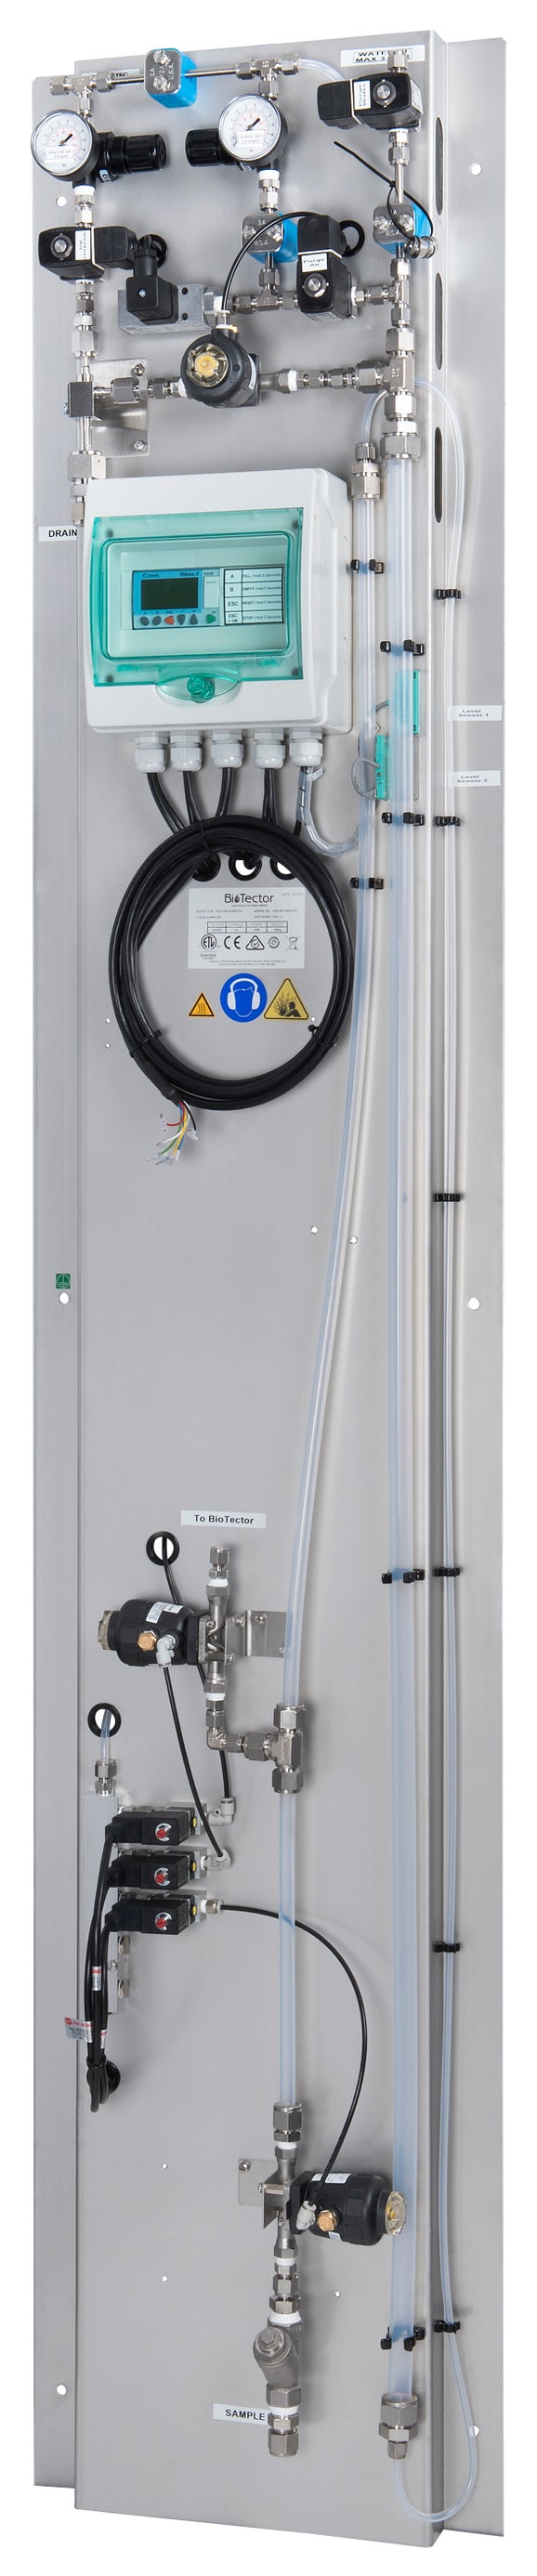 Tomamuestras Venturi para lavado con aire y agua (3 corrientes), para BioTector B7000/B7000i/B7000i Dairy